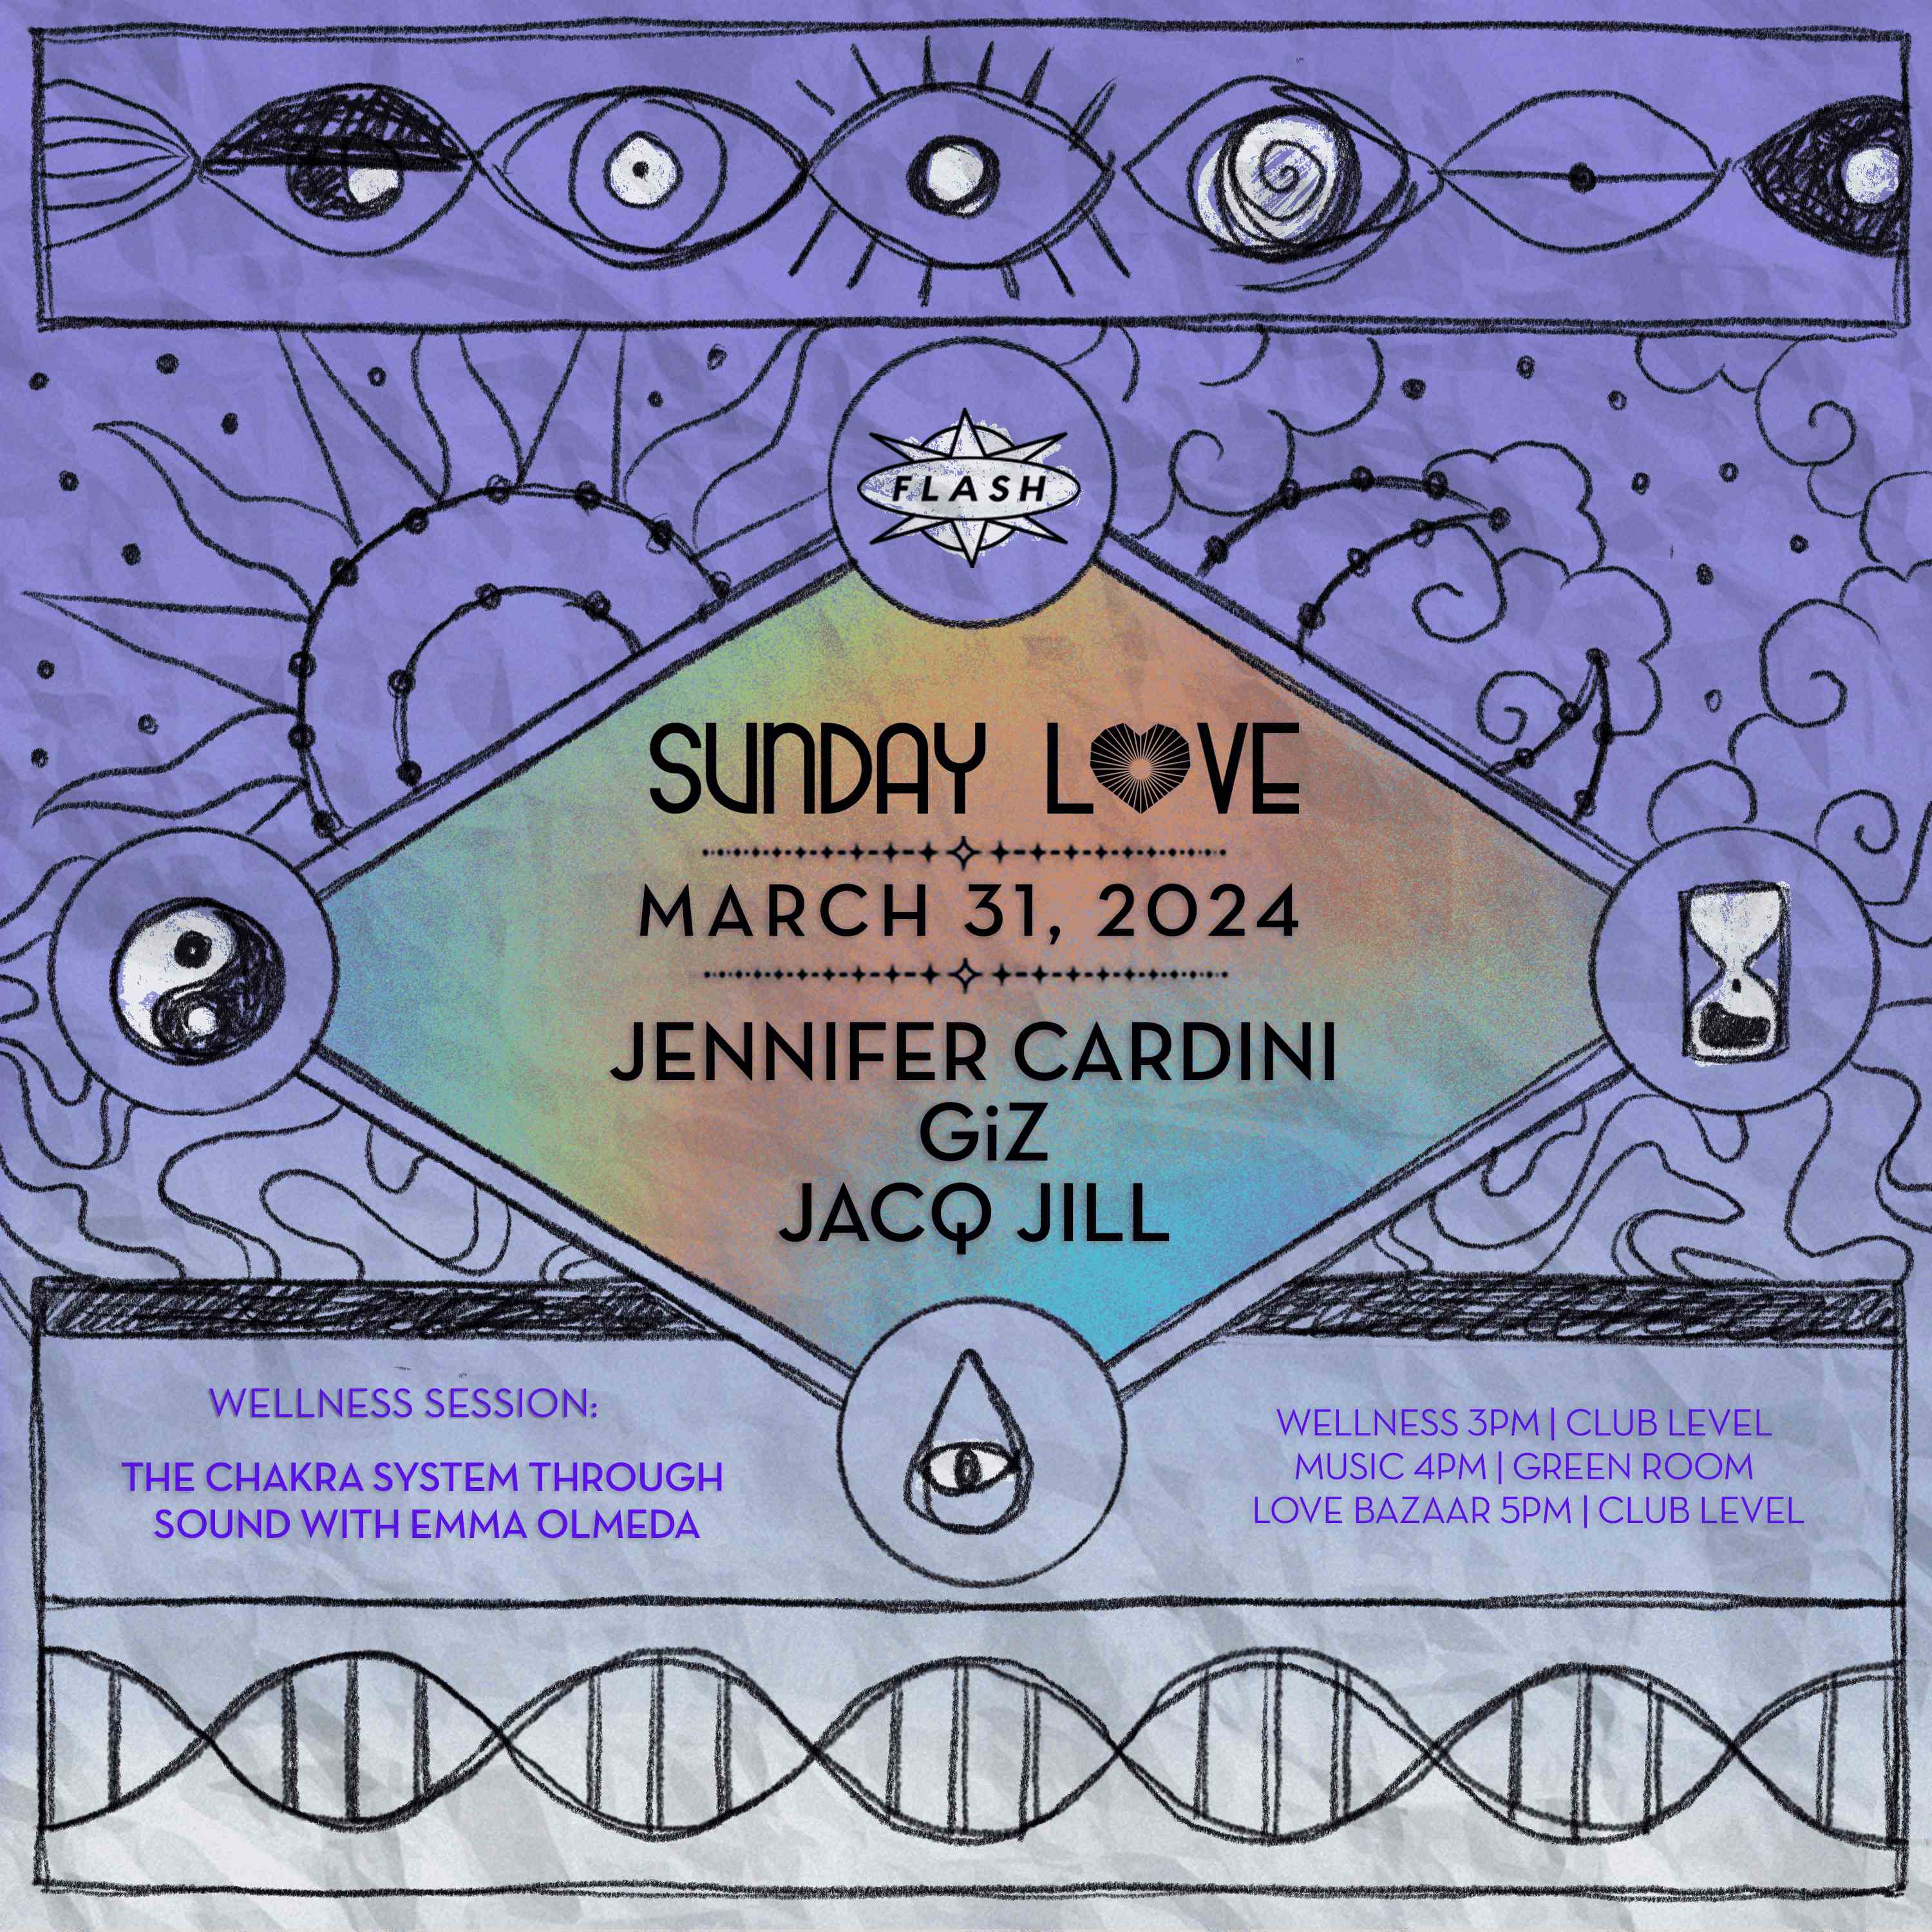 Sunday Love: Jennifer Cardini - GiZ - Jacq Jill event flyer